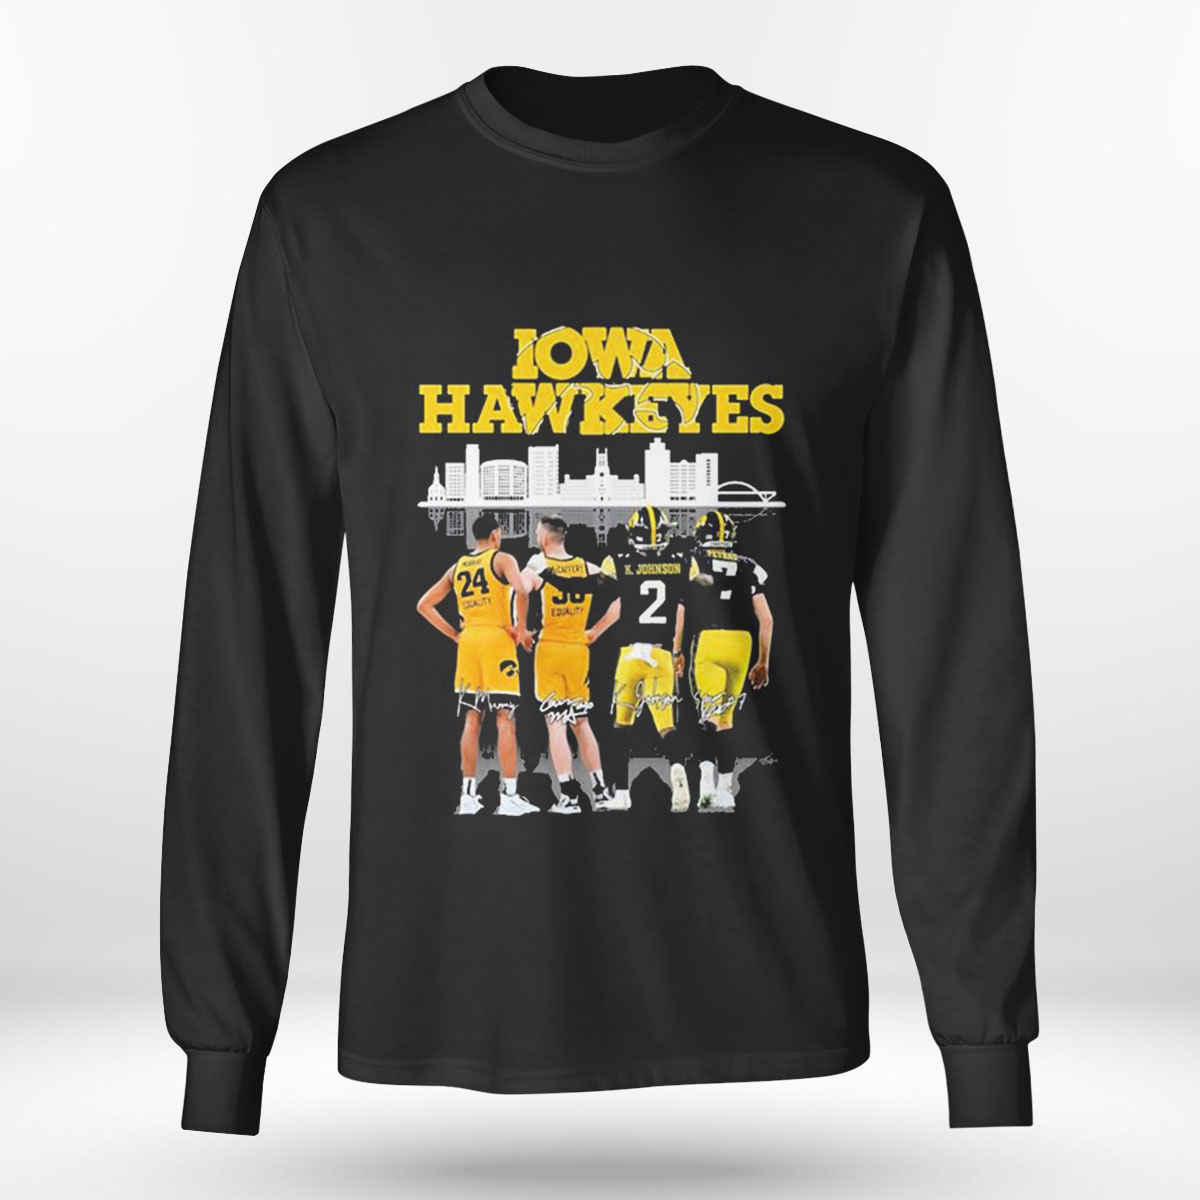 Kansas State Wildcats Ncaa Mens Basketball Elite Eight 2023 T-shirt